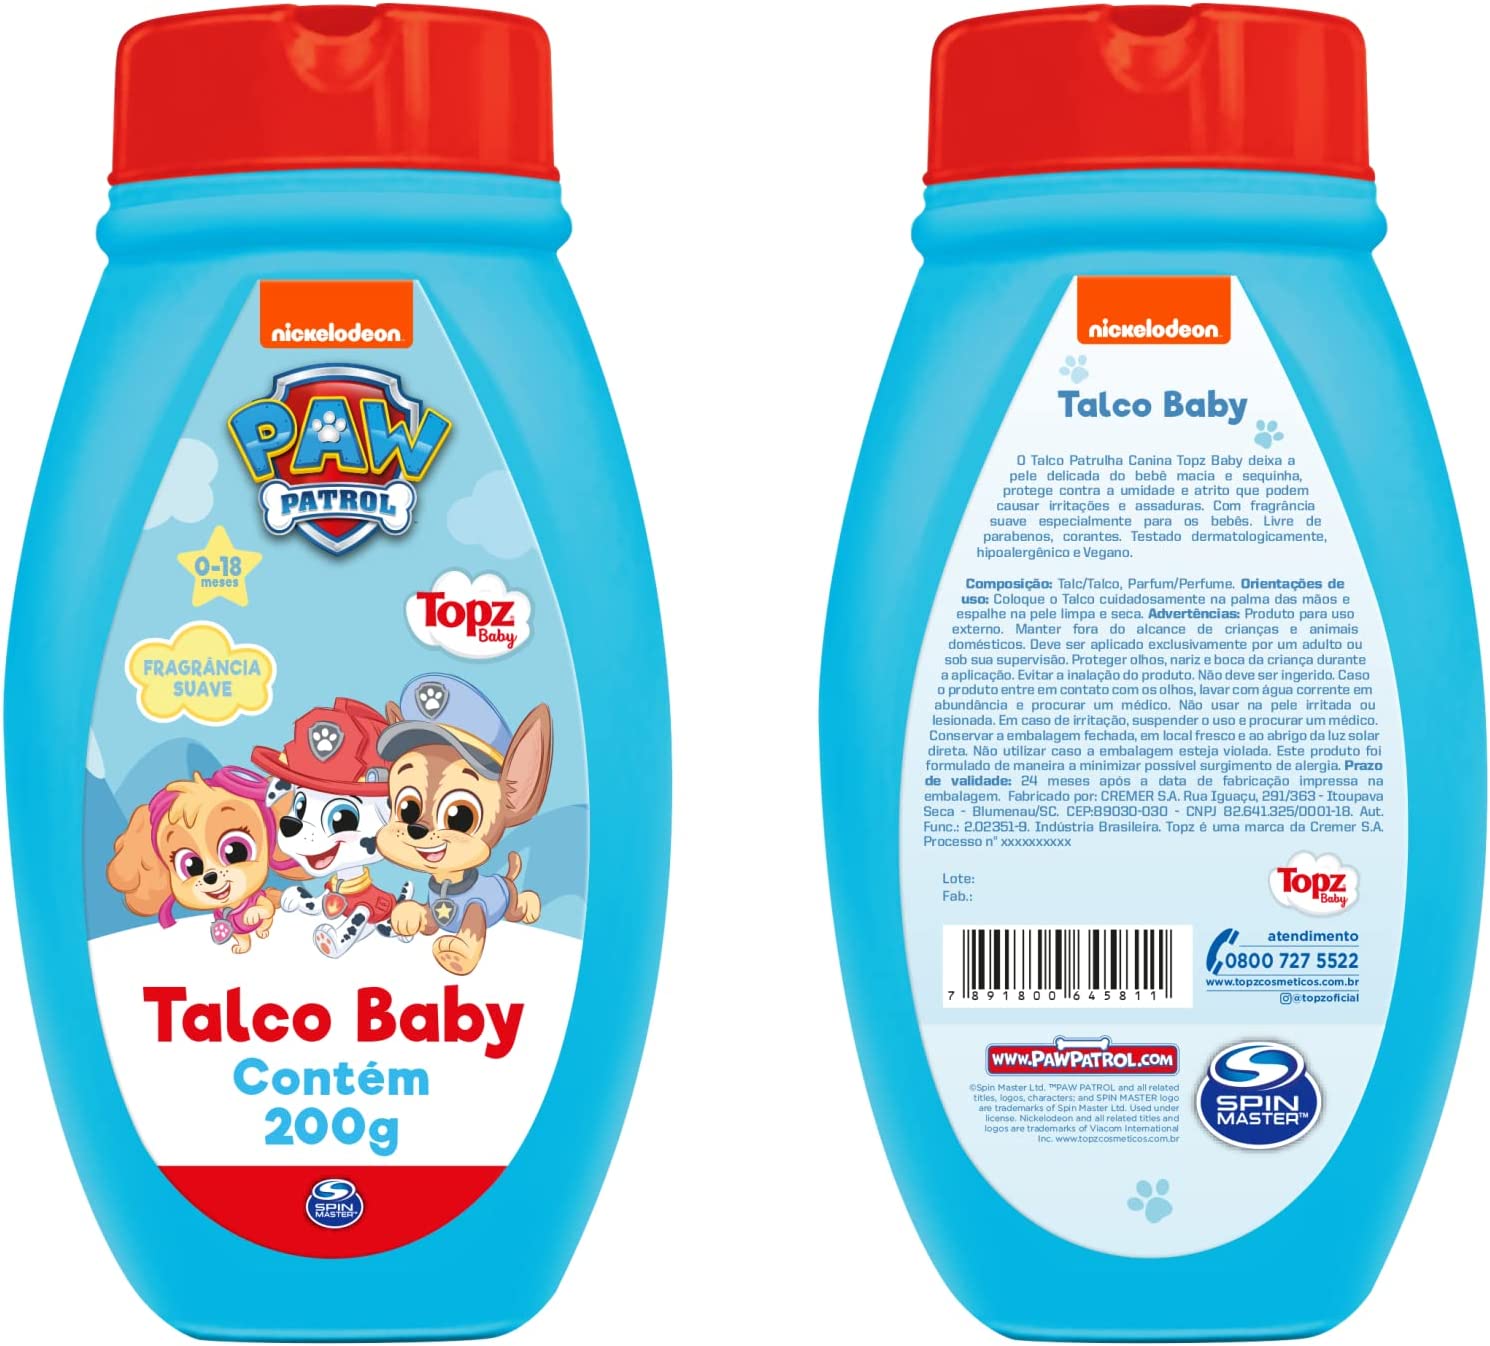 Talco Topz Baby Patrulha Canina - 200g